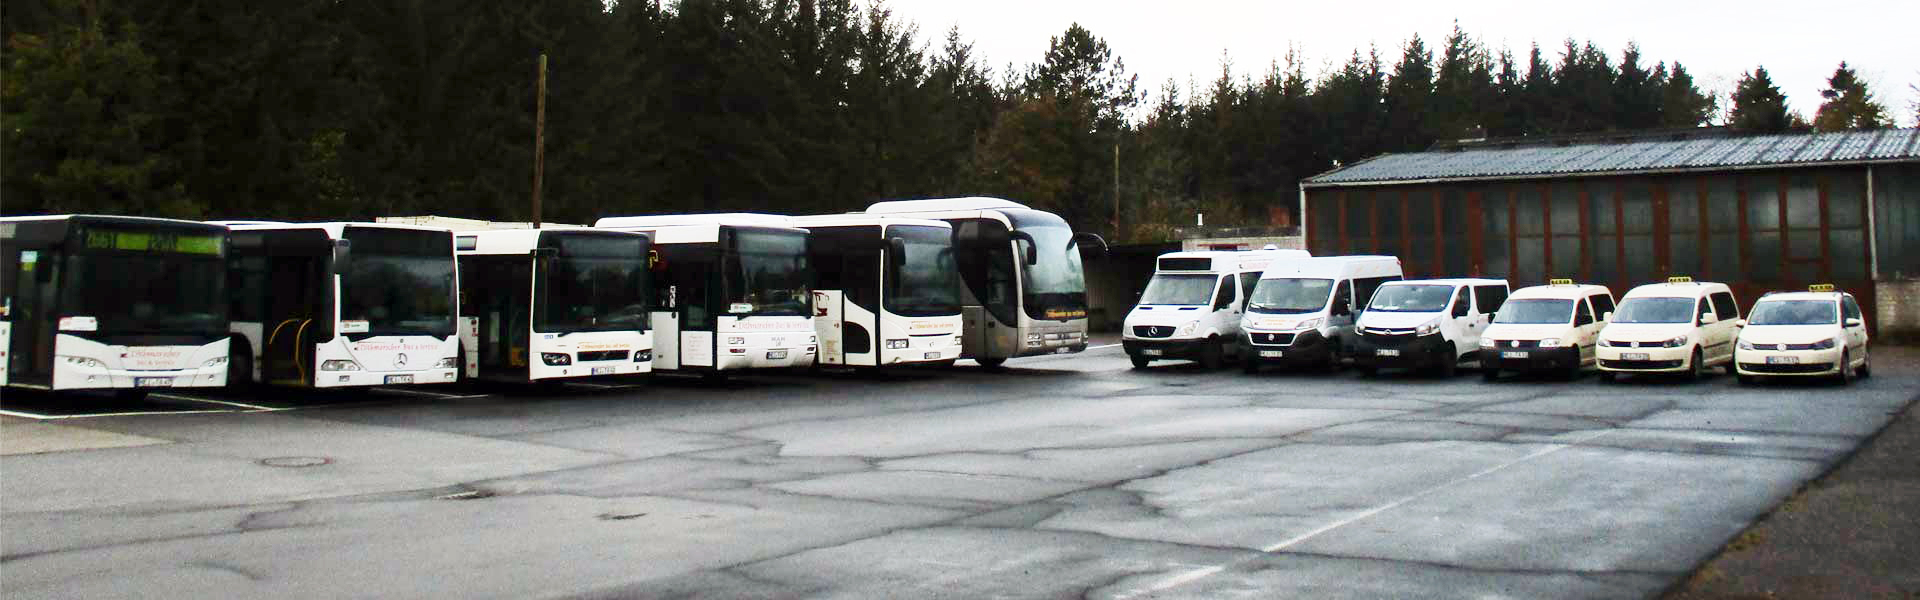 Dithmarscher Bus und Service Busflotte